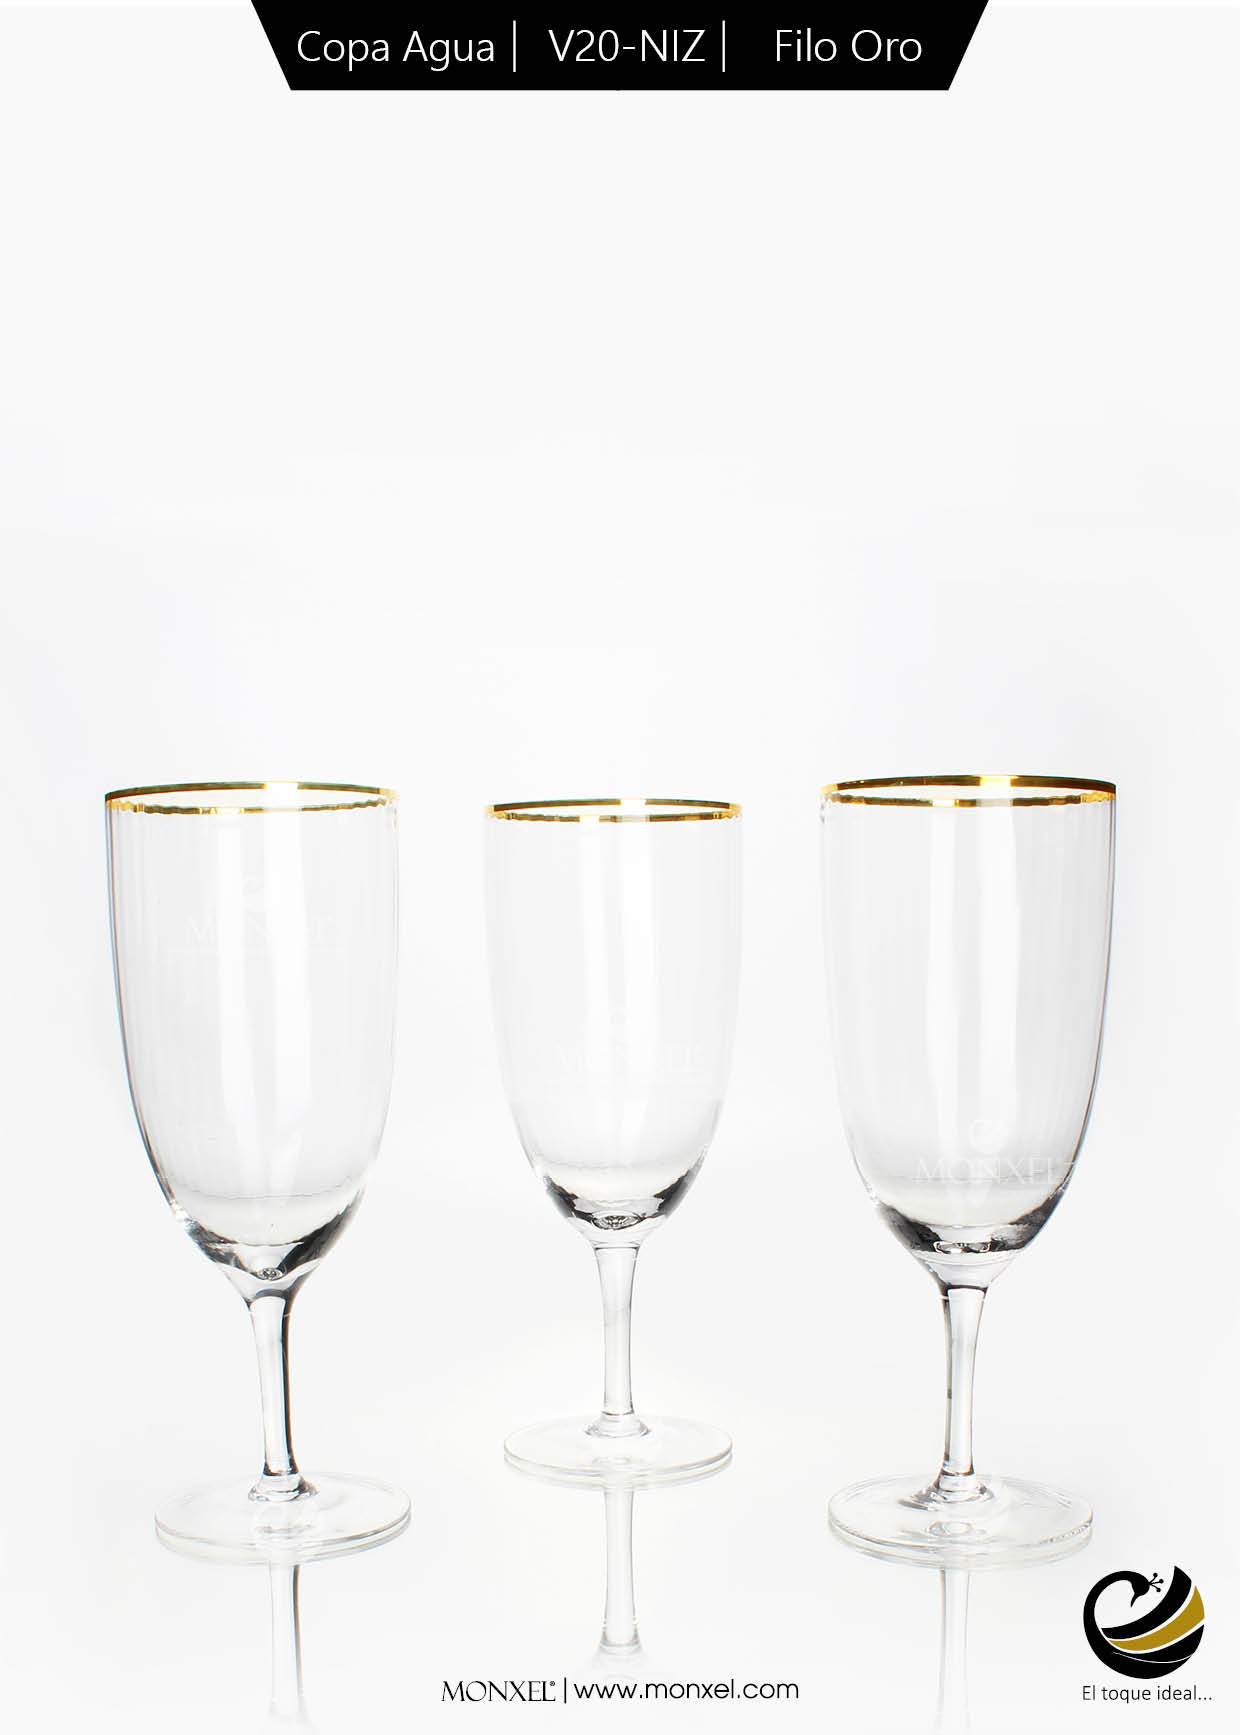 Copas Vino Blanco V19-NOV Filo Oro (Cristal) – MONXEL®